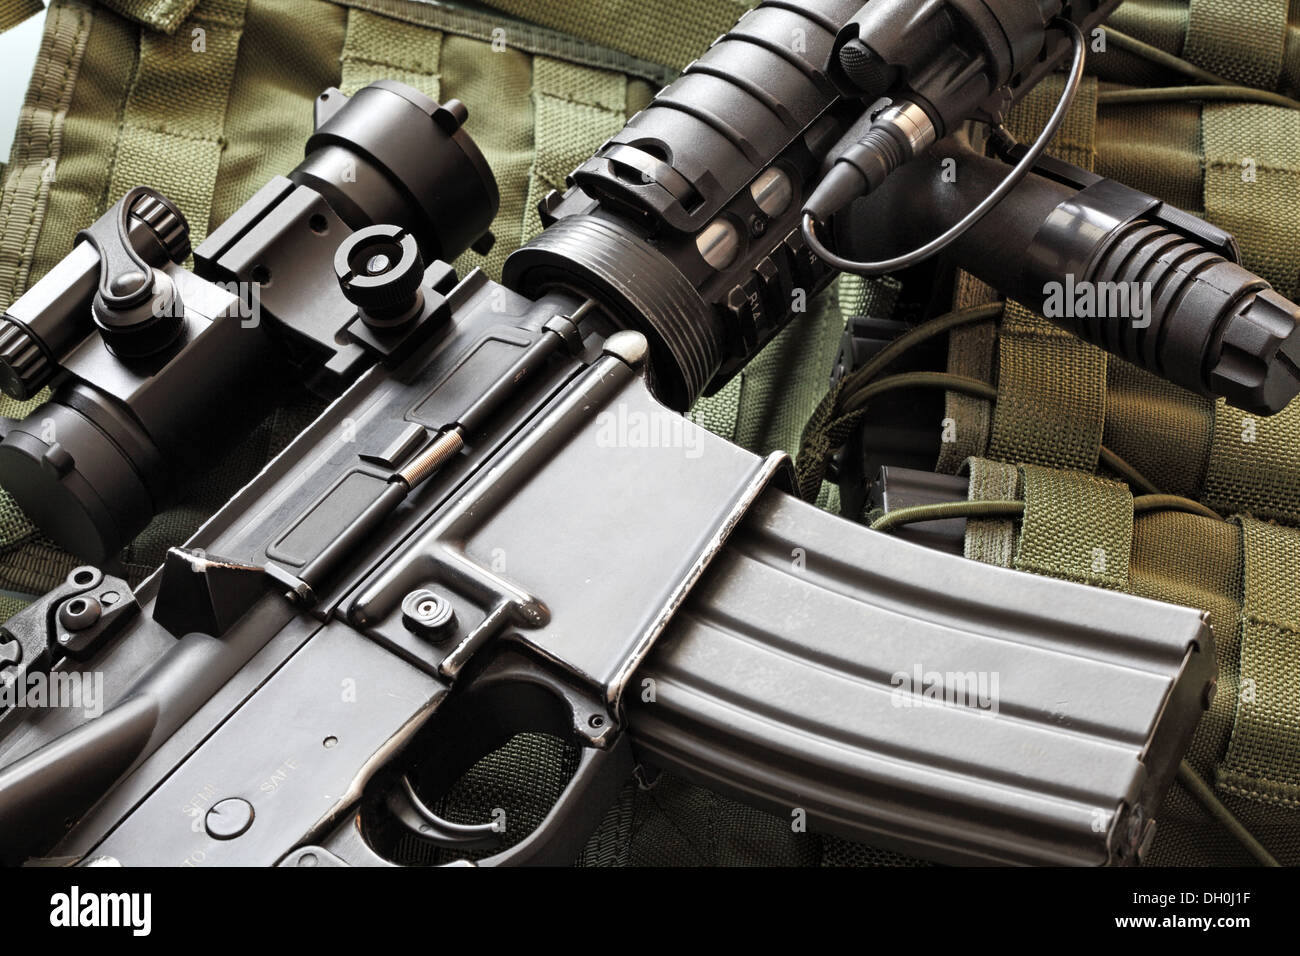 Détail d'un rayé M4A1 Carbine (AR-15) et vert veste tactique militaire Banque D'Images